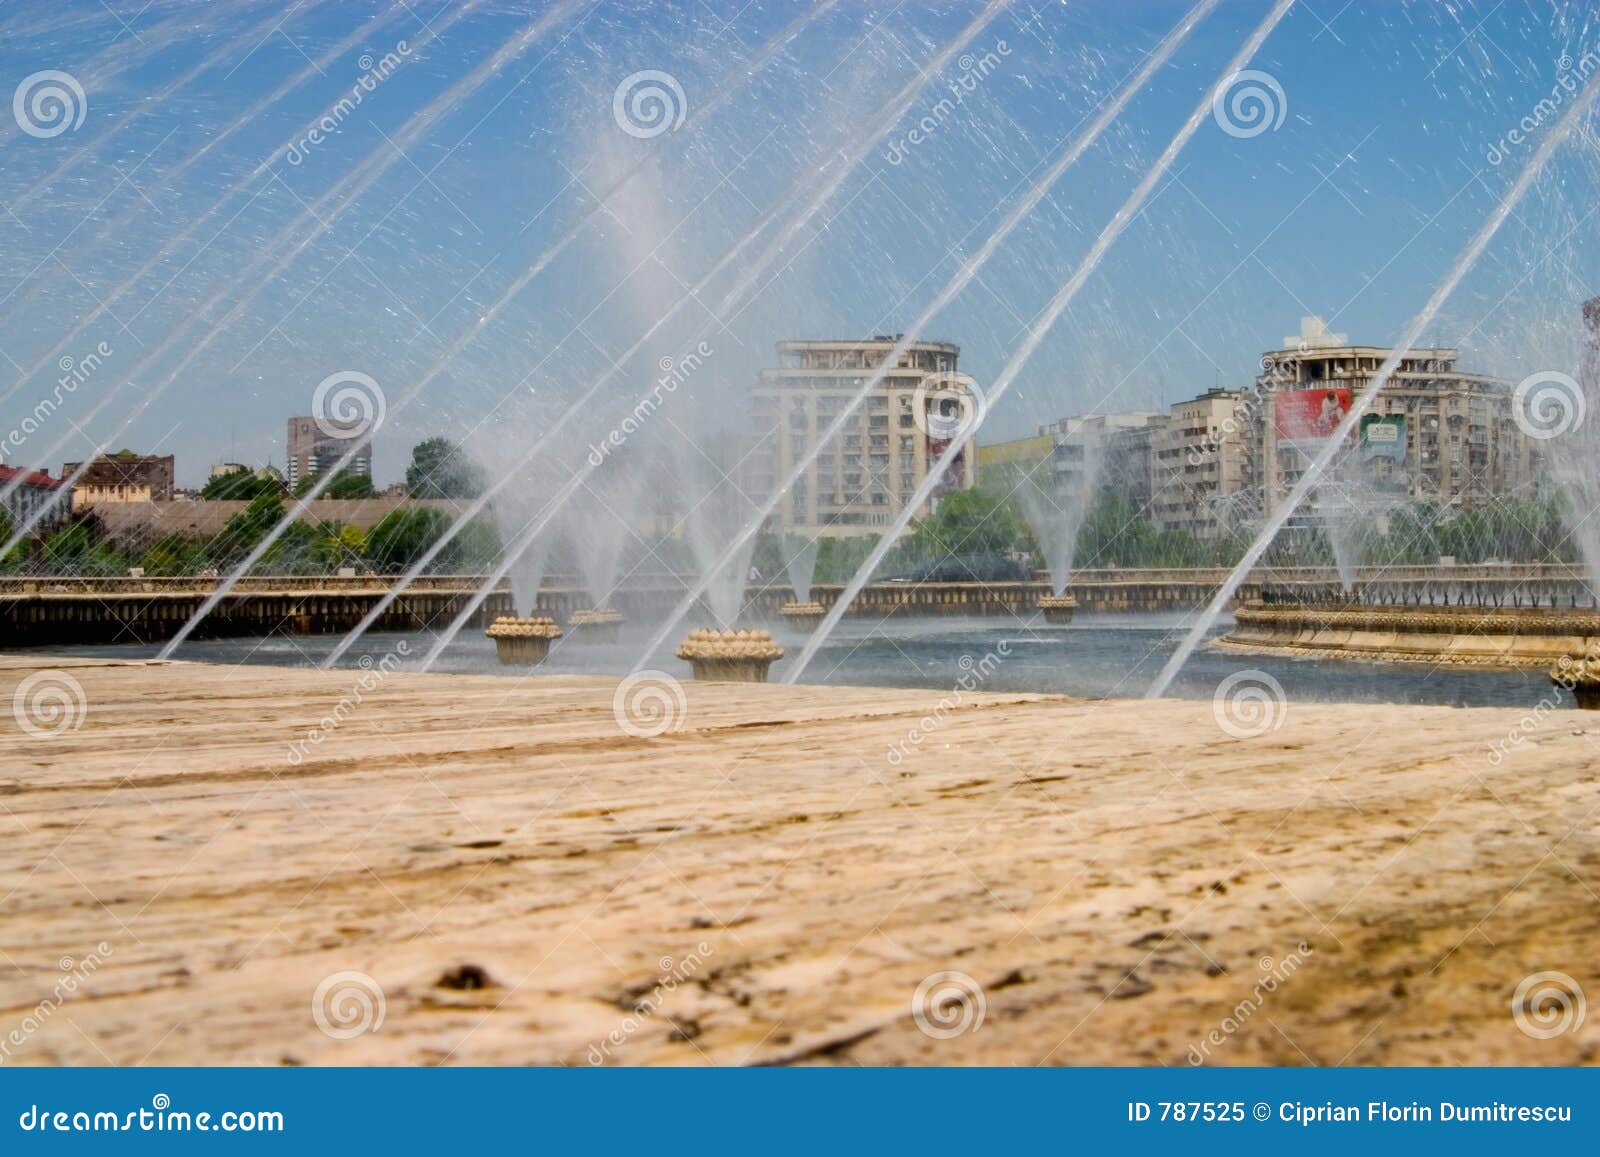 Tracce dell'acqua. L'acqua strascica da una fontana della città centrale Bucarest - in Romania